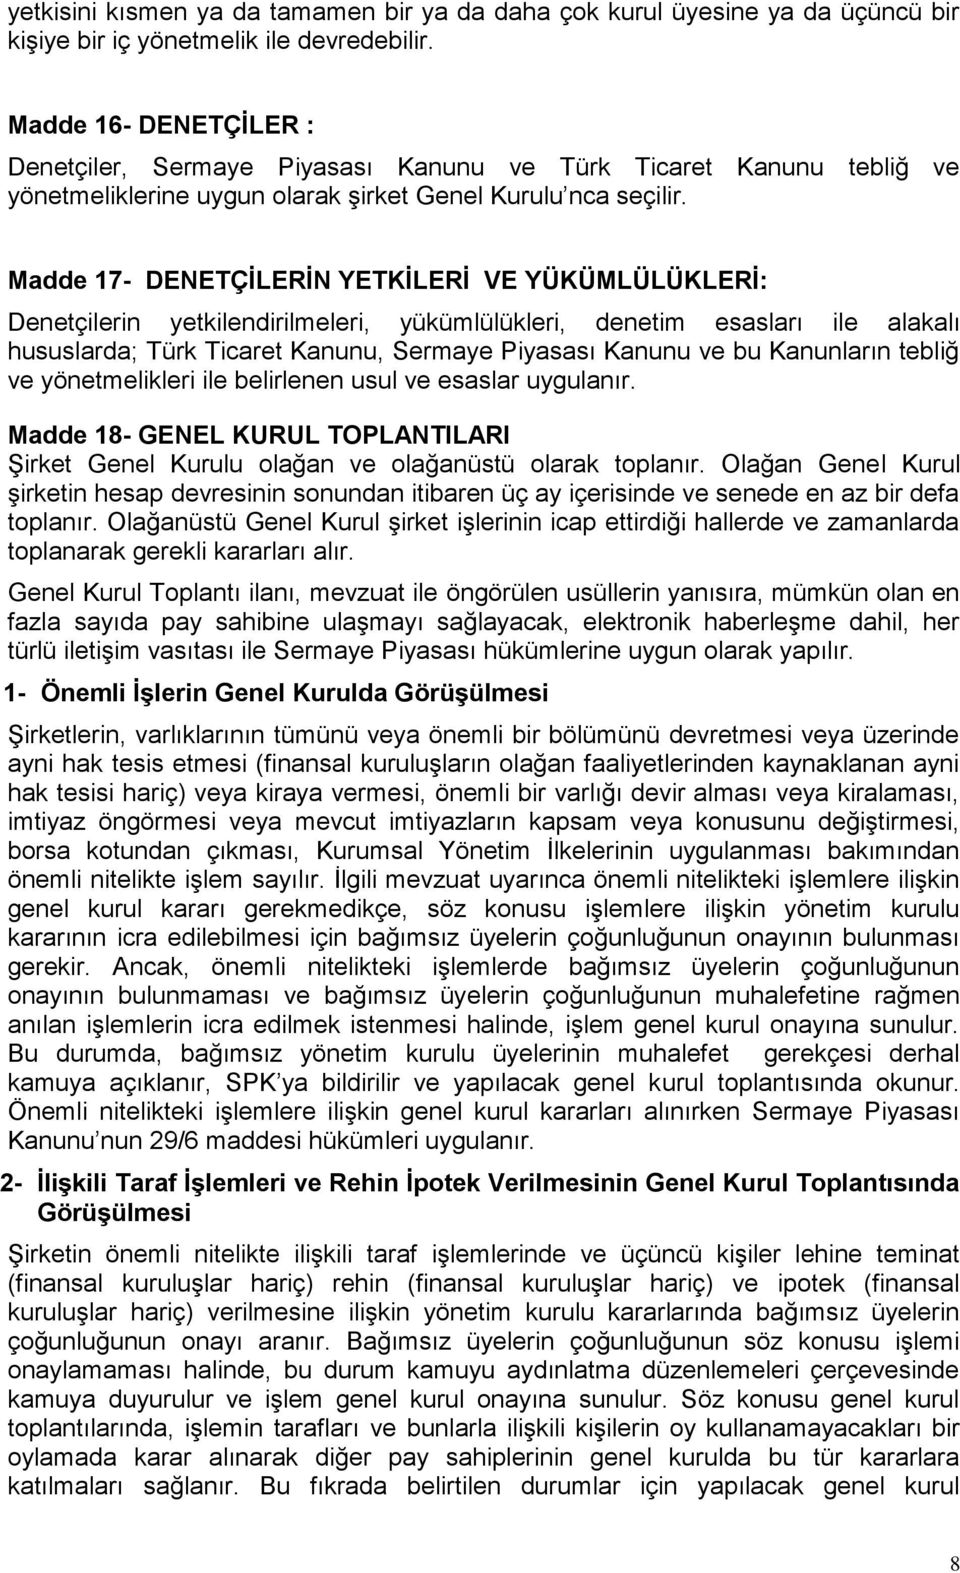 Madde 17- DENETÇİLERİN YETKİLERİ VE YÜKÜMLÜLÜKLERİ: Denetçilerin yetkilendirilmeleri, yükümlülükleri, denetim esasları ile alakalı hususlarda; Türk Ticaret Kanunu, Sermaye Piyasası Kanunu ve bu